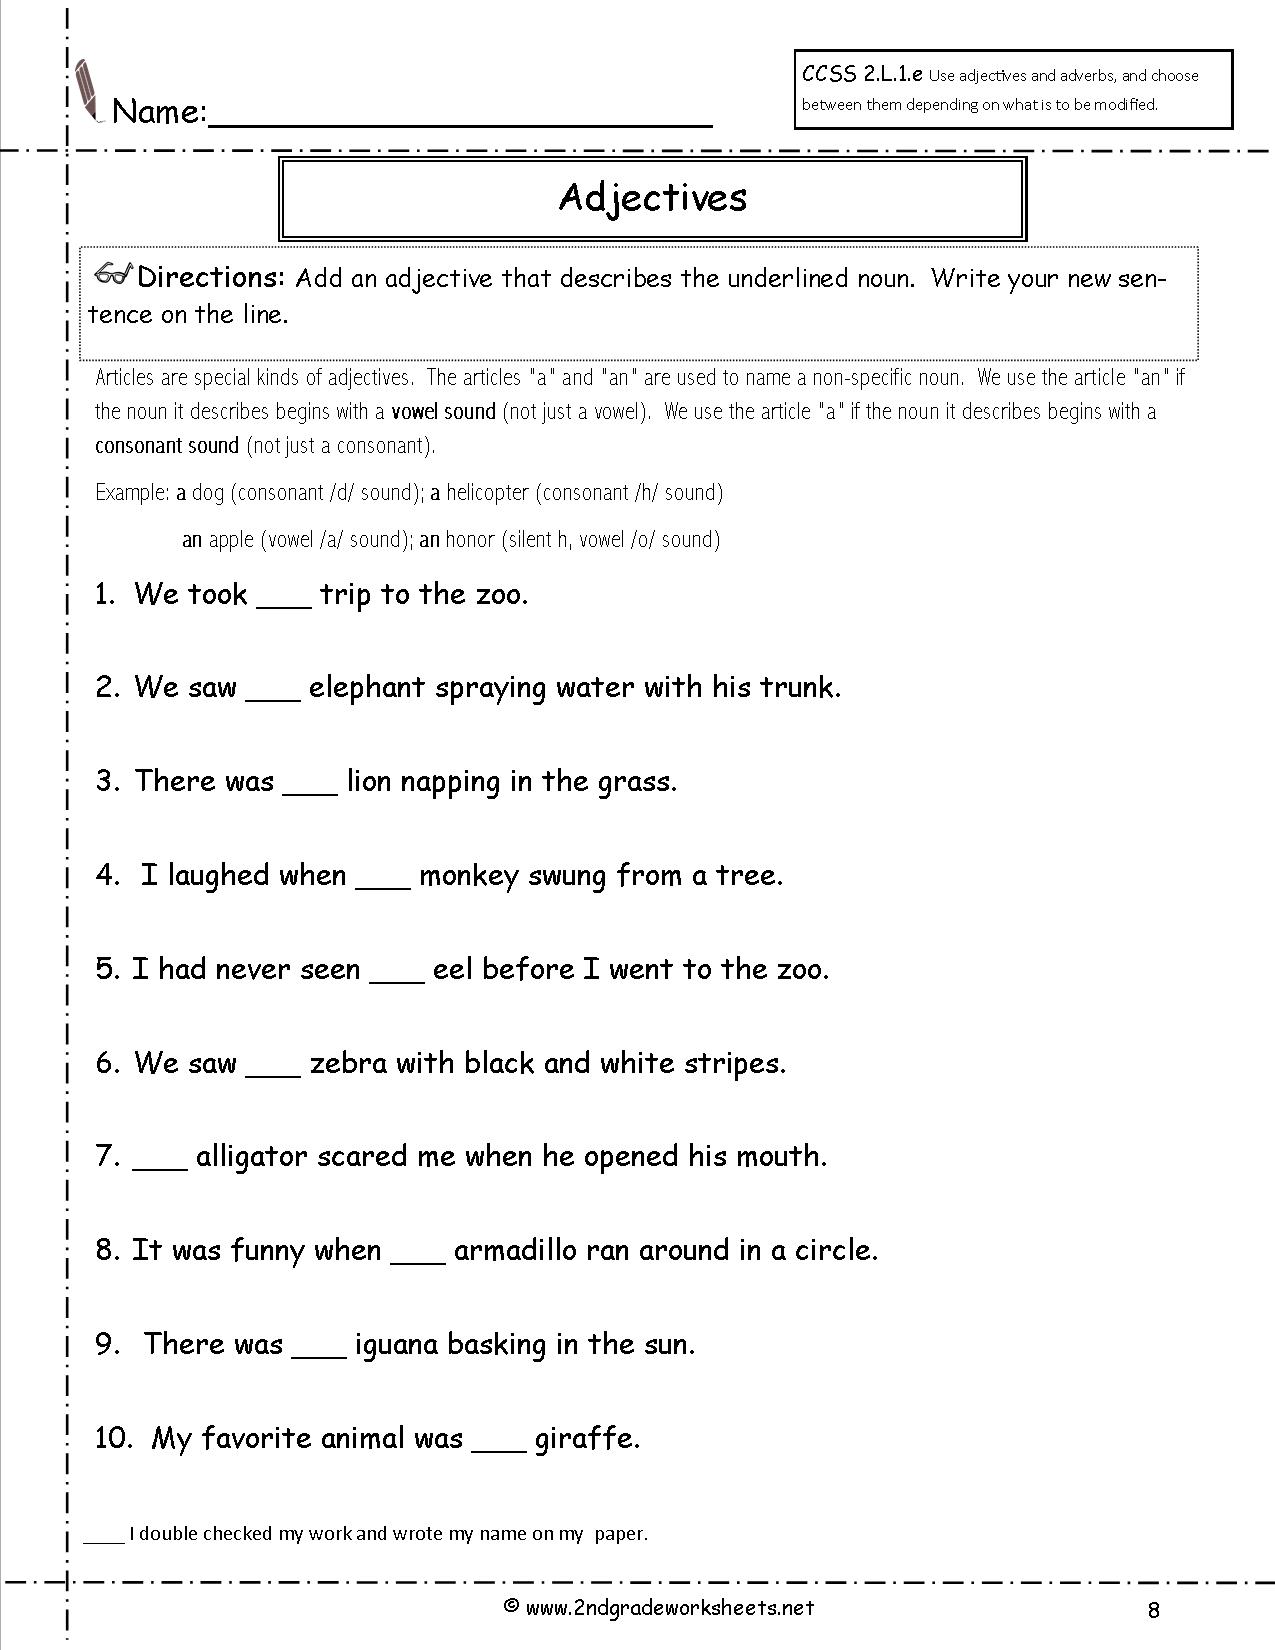 adverbs-worksheet-grammar-worksheet-for-class-3-worksheets-adjectives-adverbs-adverb-worksheet